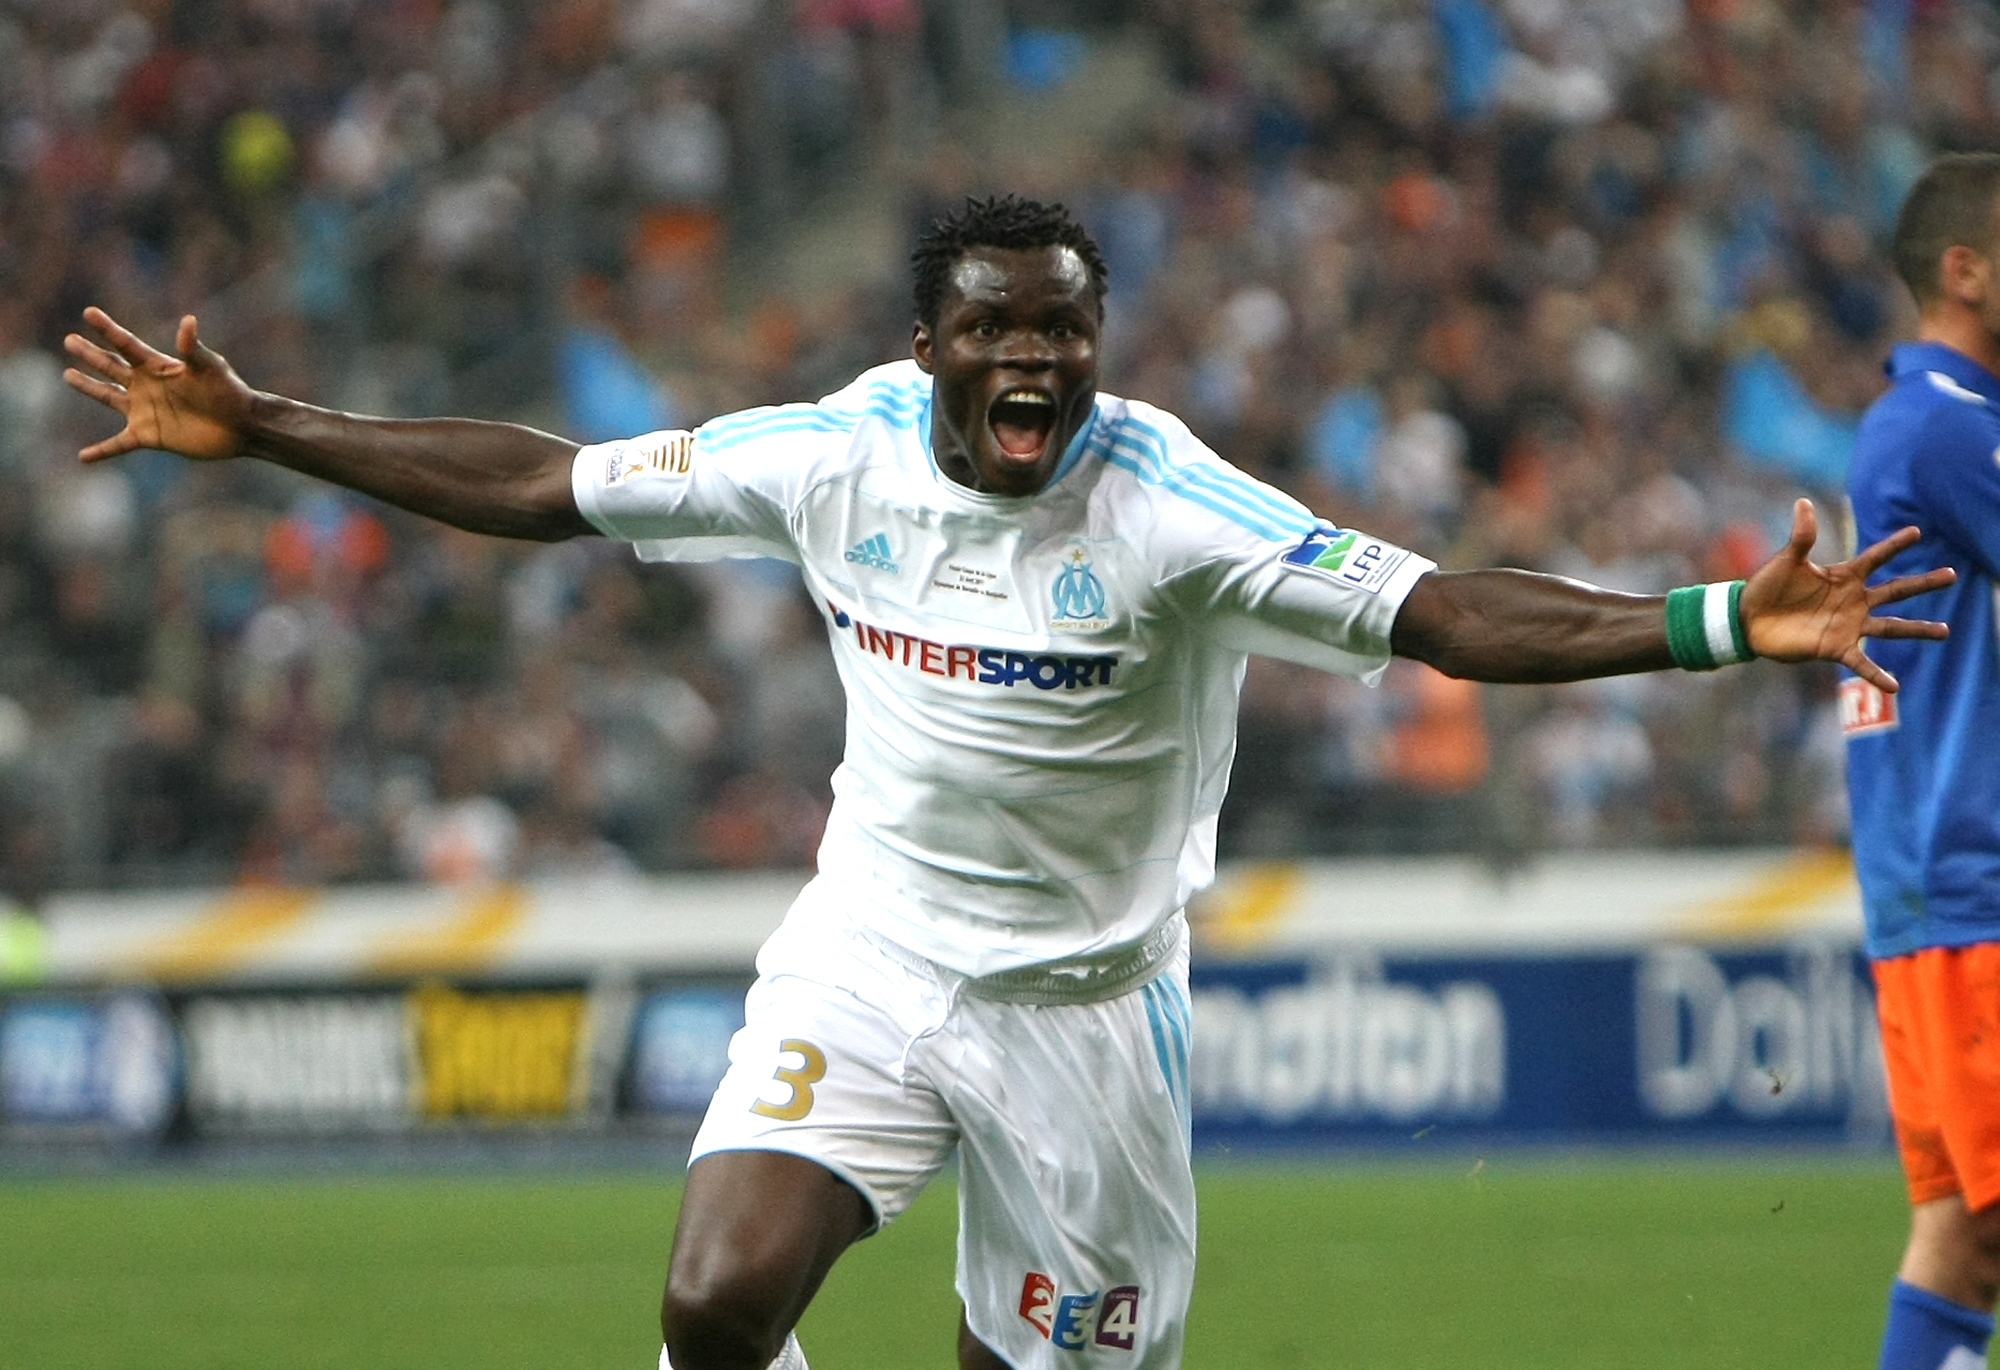 Marseille-spelaren Taye Taiwo är klar för Milan, enligt franska medier.